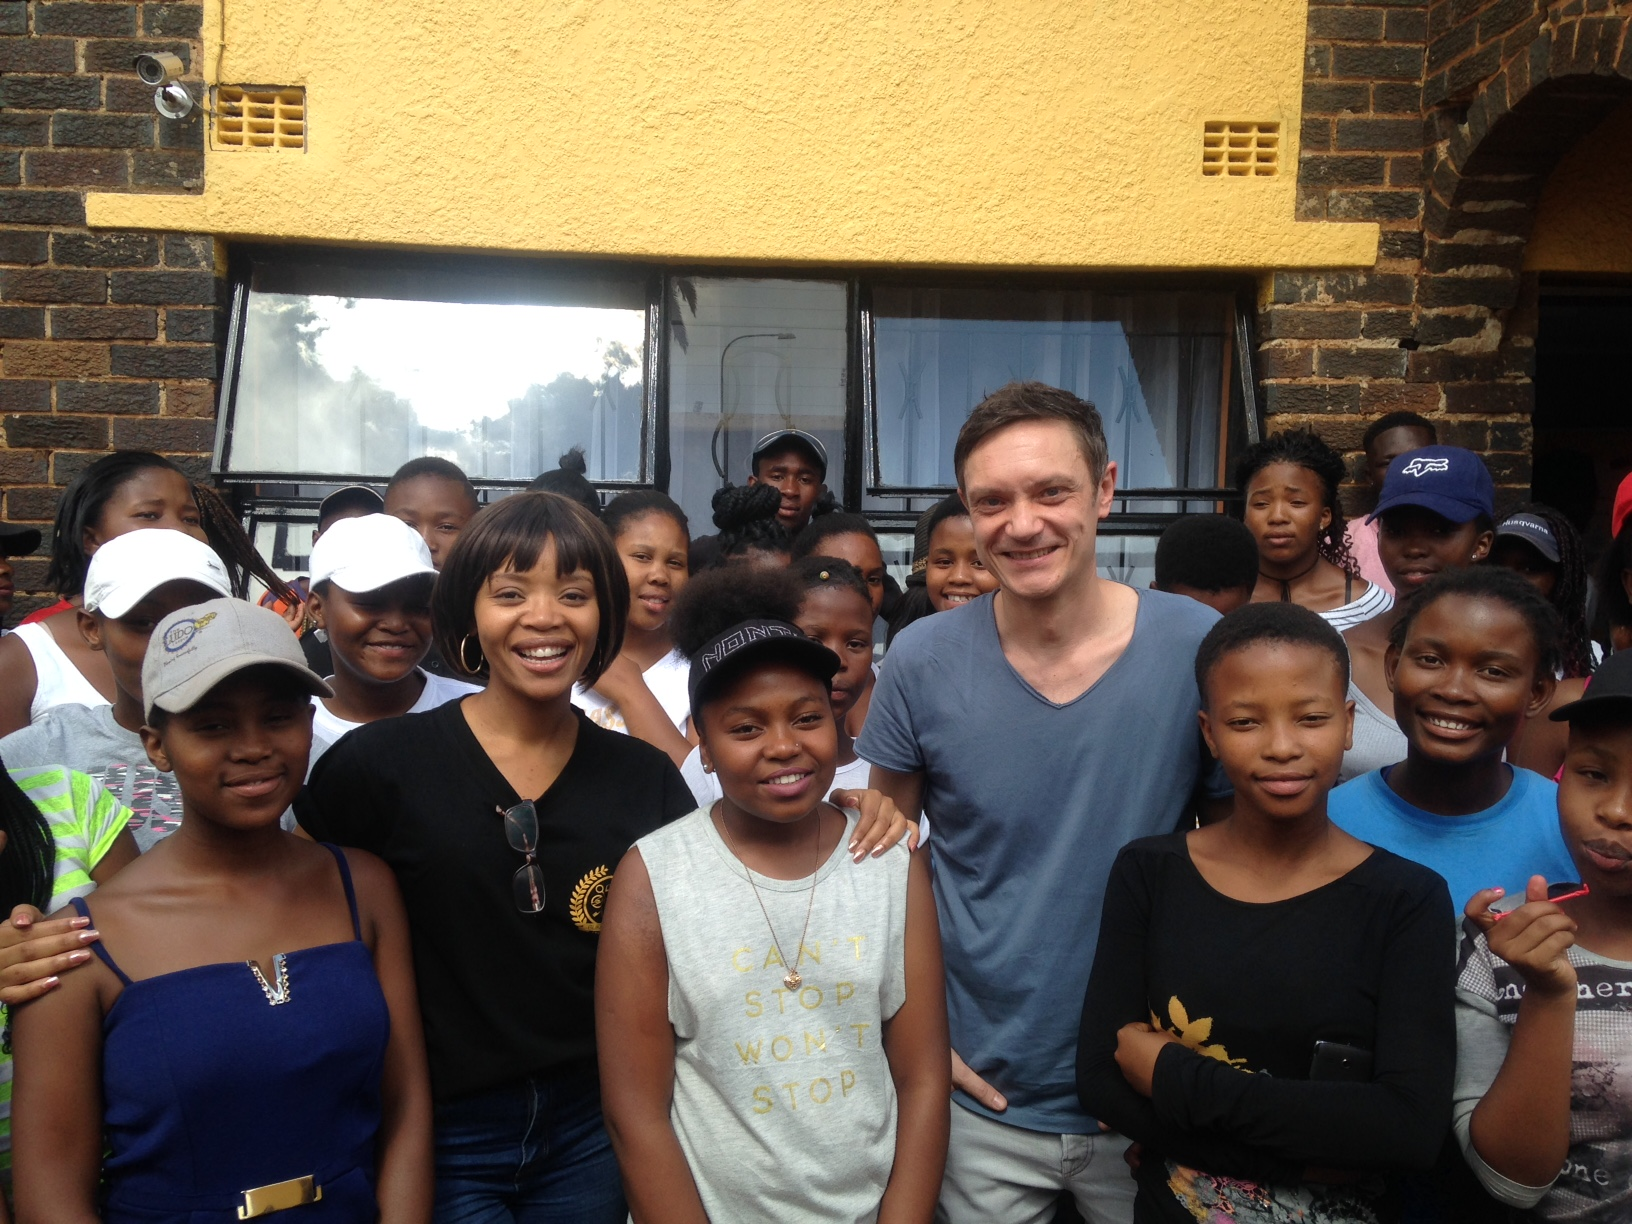 Ralf GUM meets Soweto Gospel Choir - Ramasedi (Ralf GUM Main